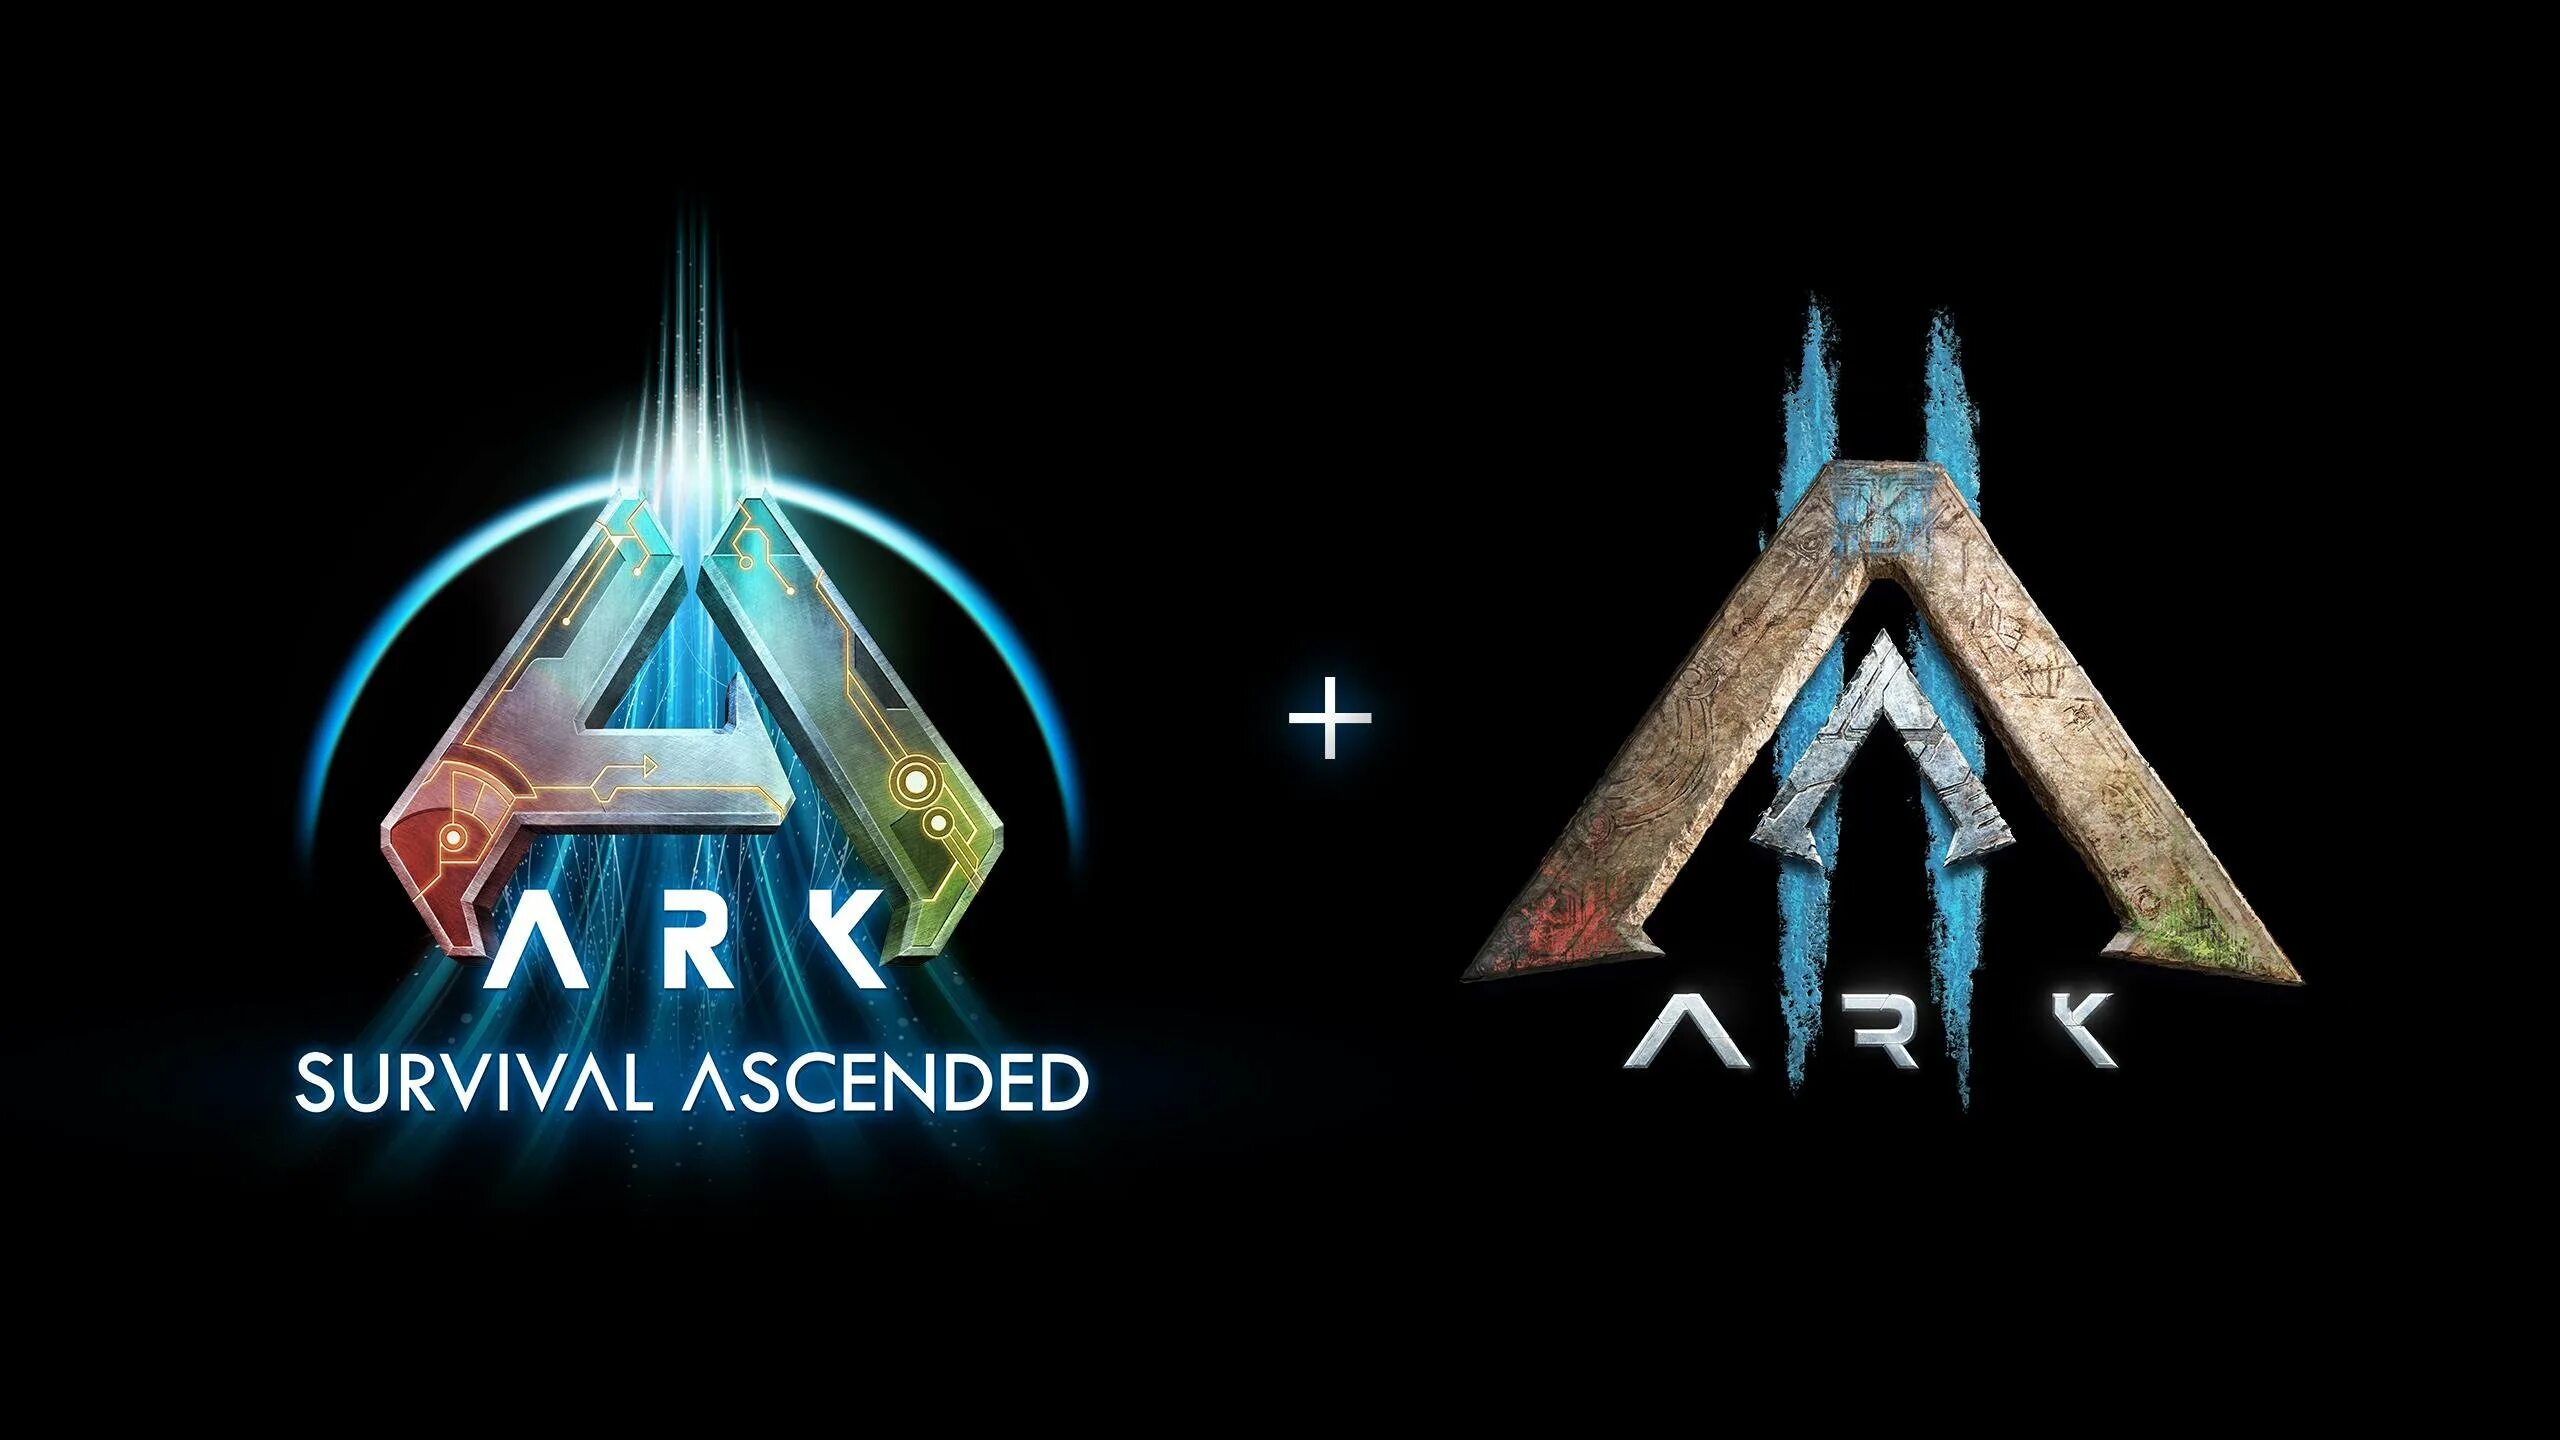 Ark ascended требования. АРК Ascended. Игра Ark 2. Ark Survival Ascended фото. Ark: Survival Ascended лого.